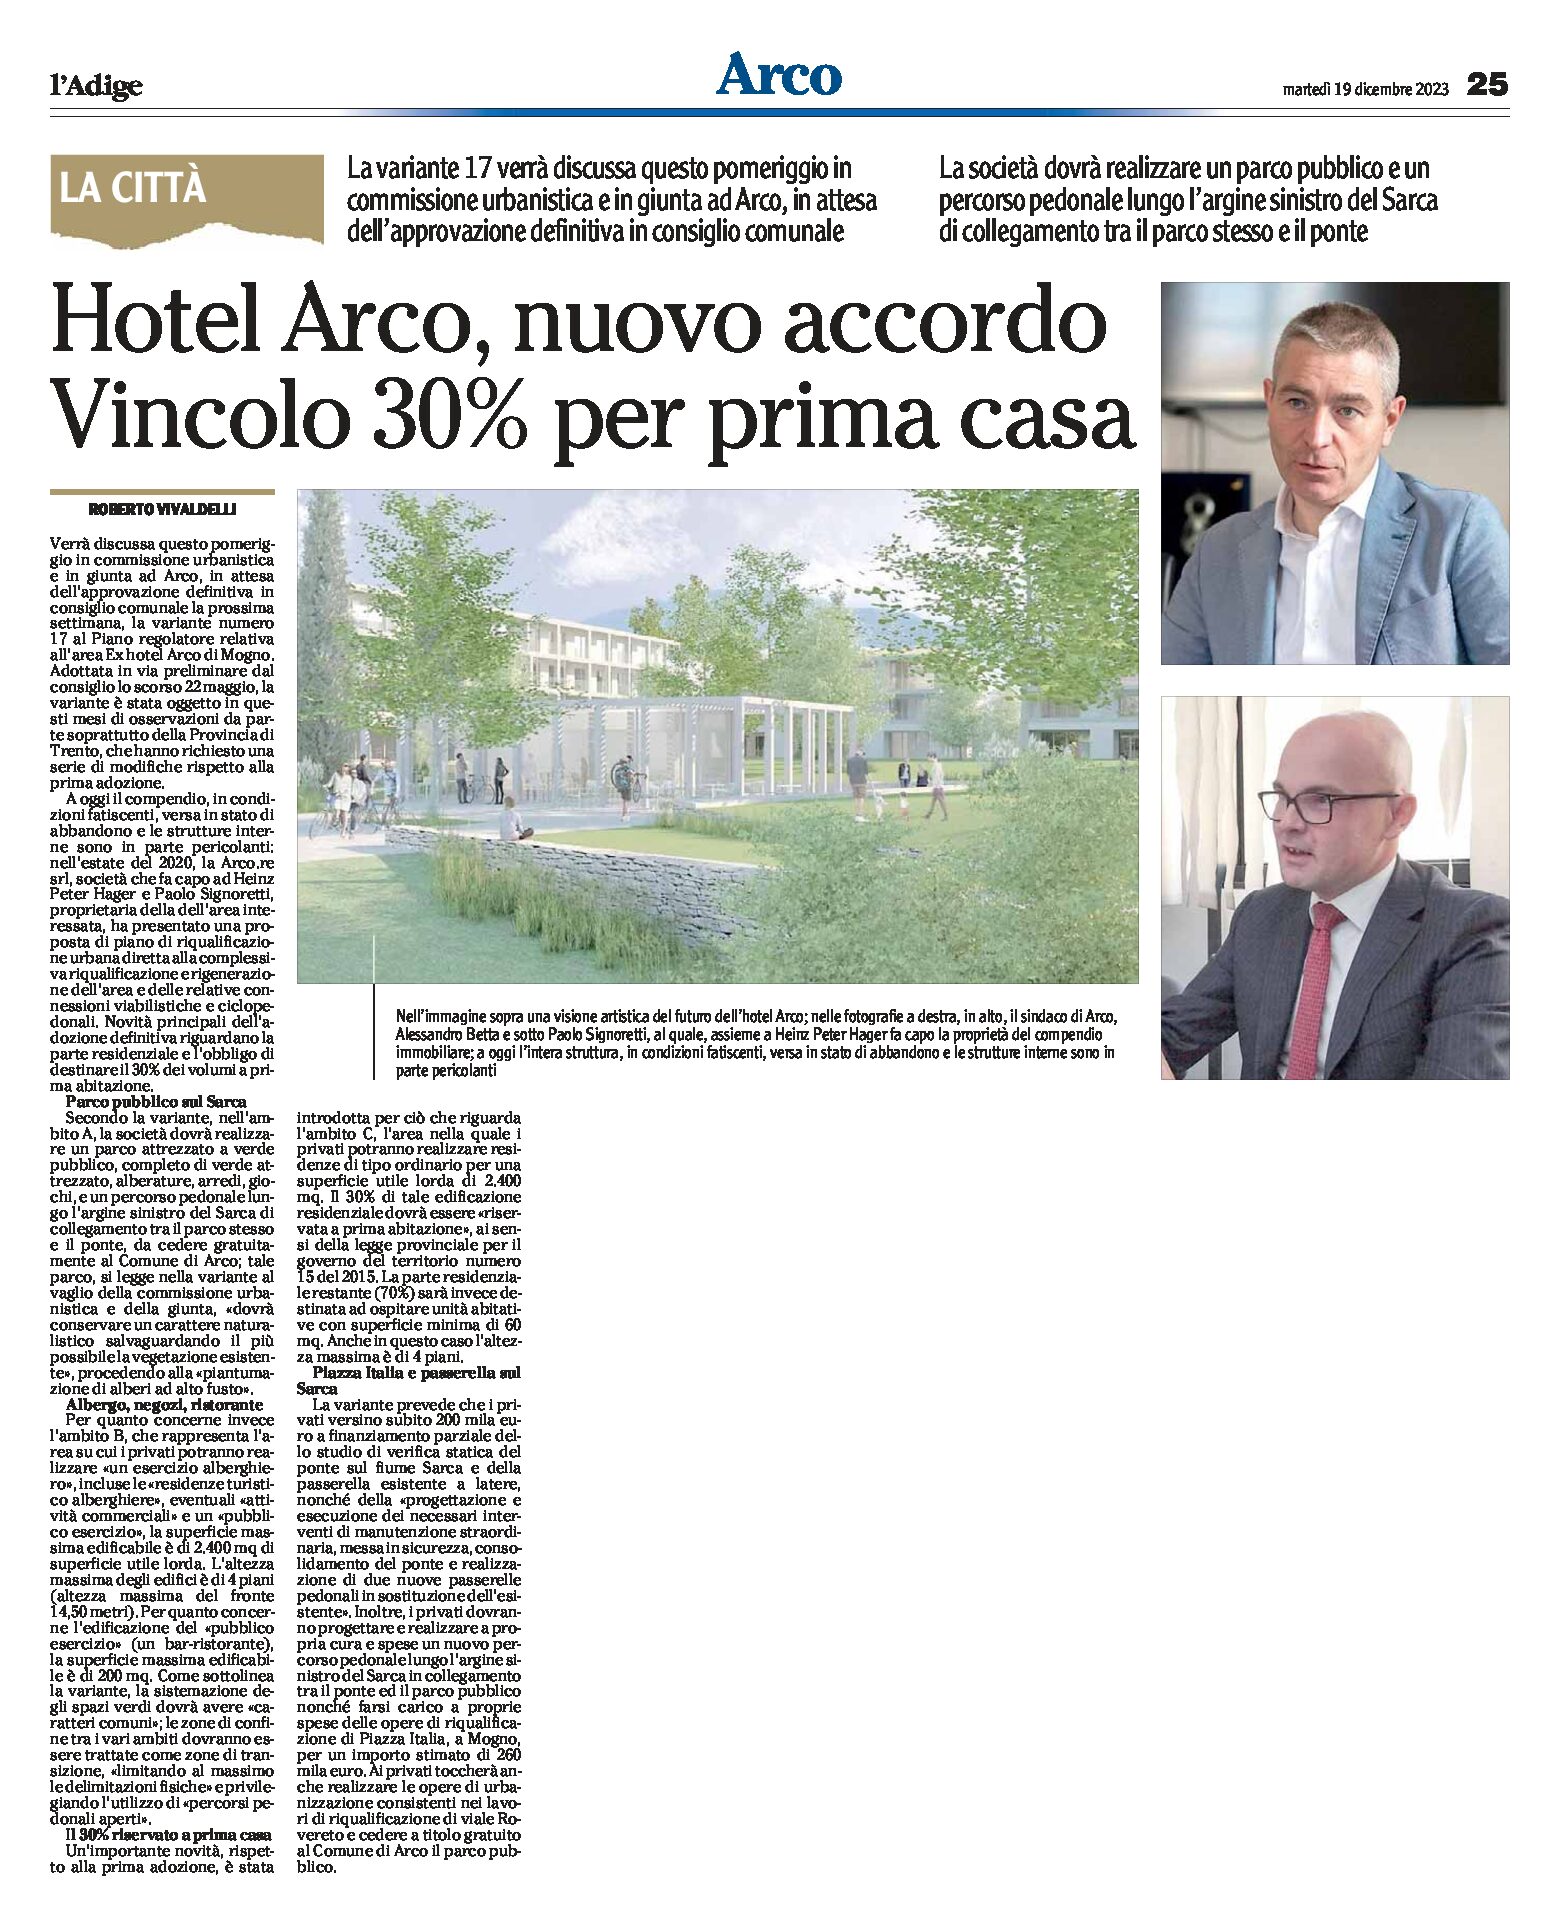 Hotel Arco: nuovo accordo, vincolo 30% per prima casa